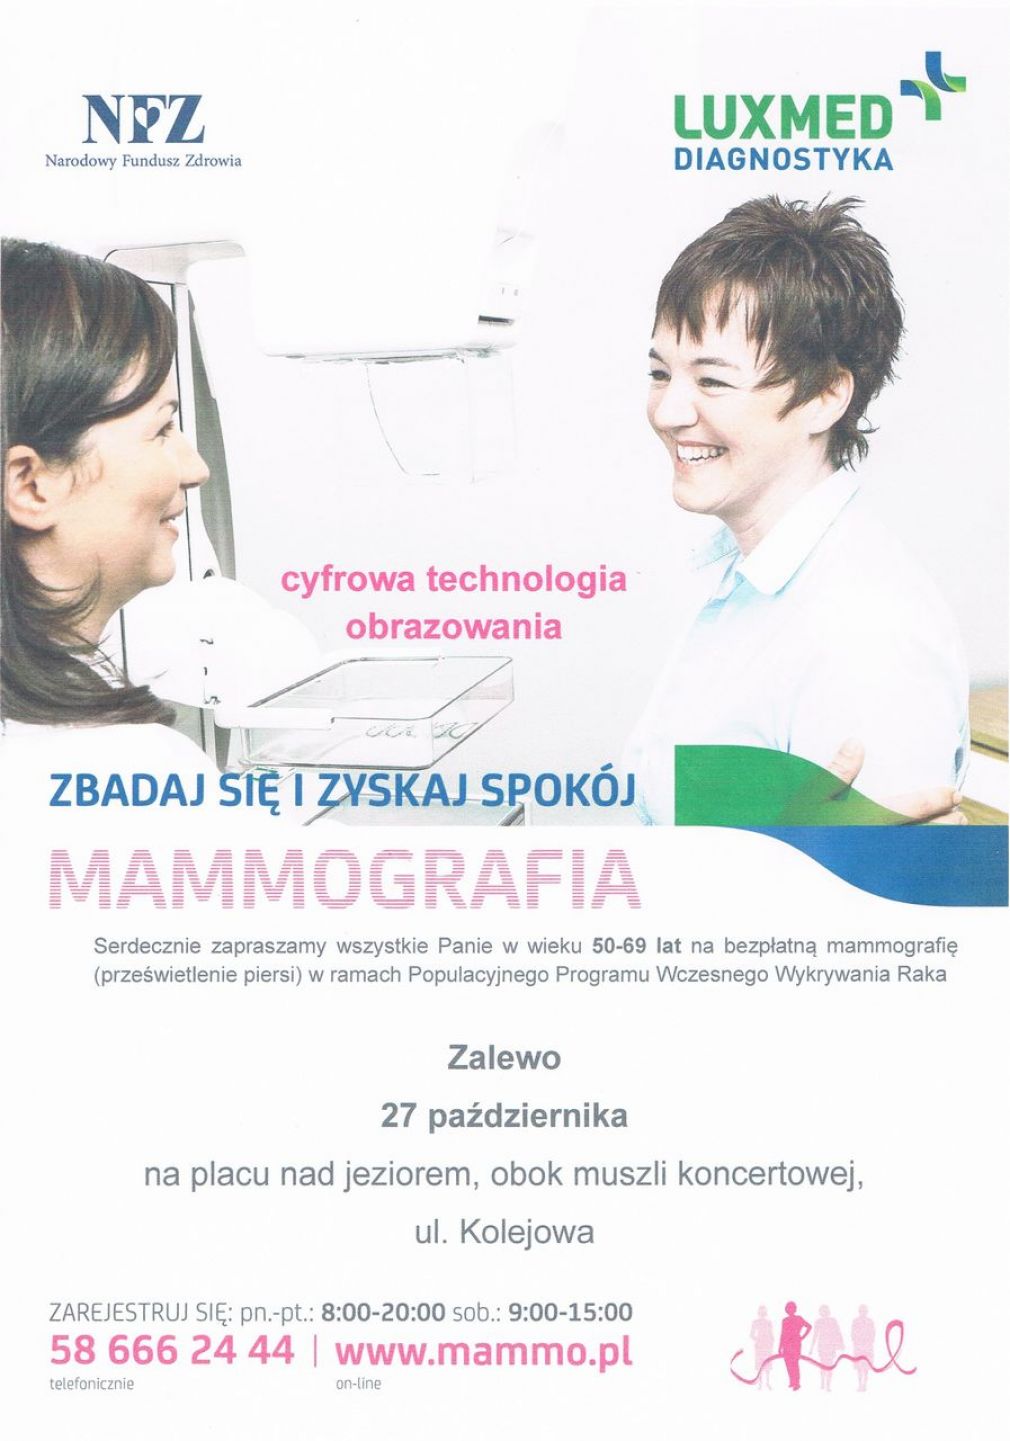 Mammografia- zaproszenie